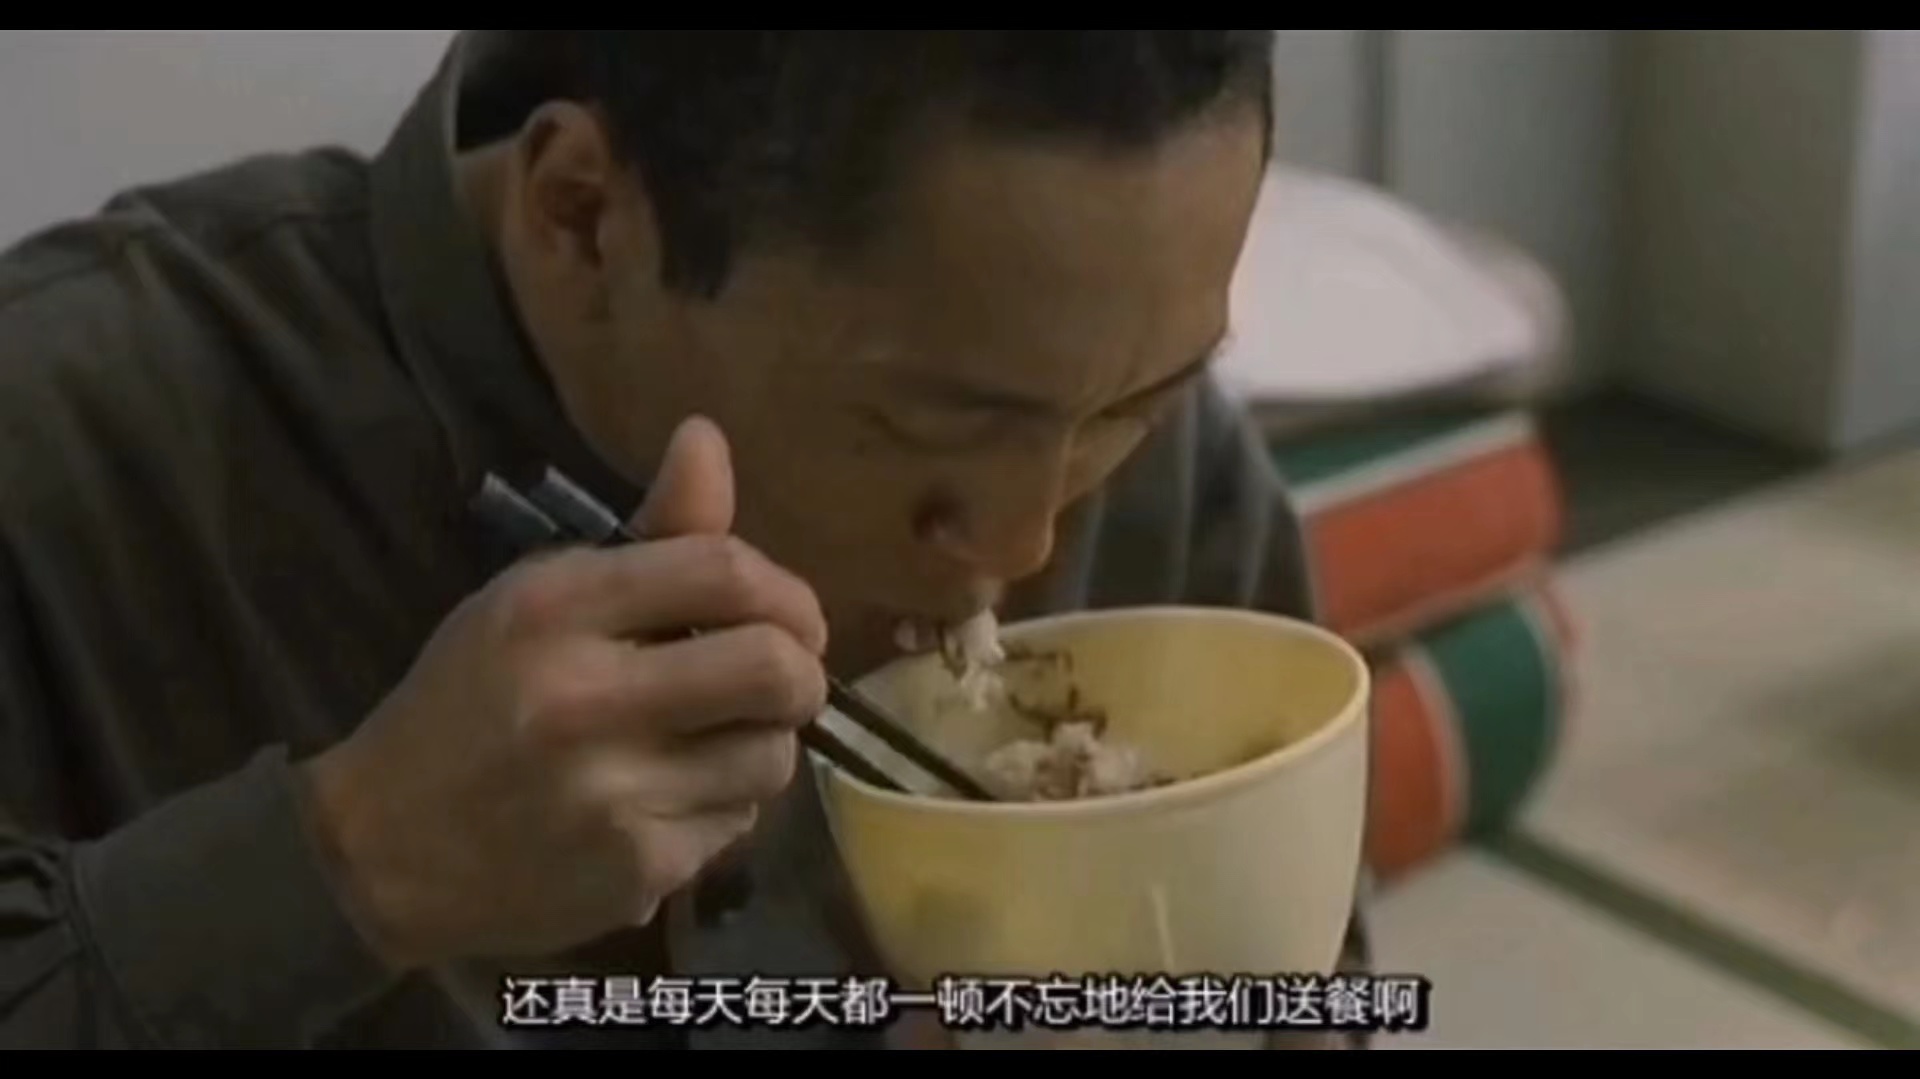 電影《監獄之中》中的現代日本監獄三餐